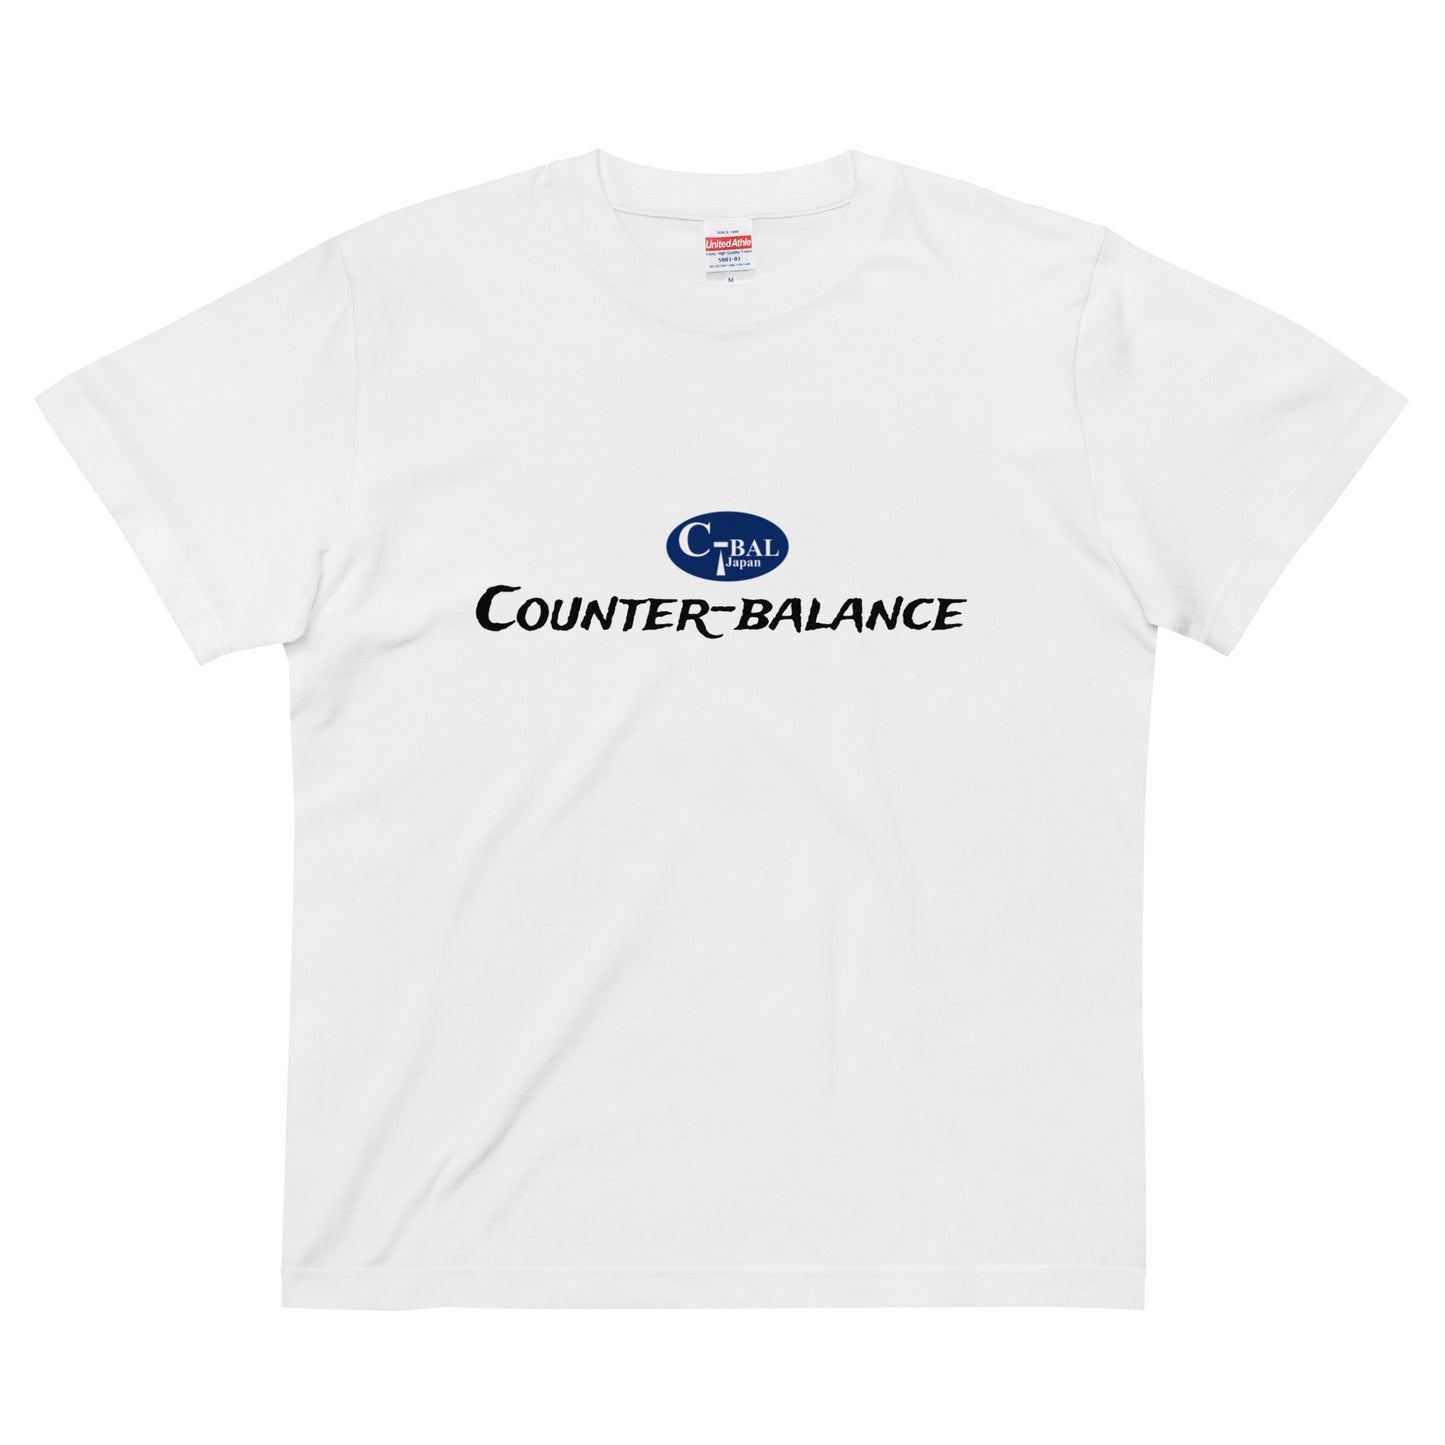 A001 - High Quality Cotton T-shirt (C-BAL : White / Navy)